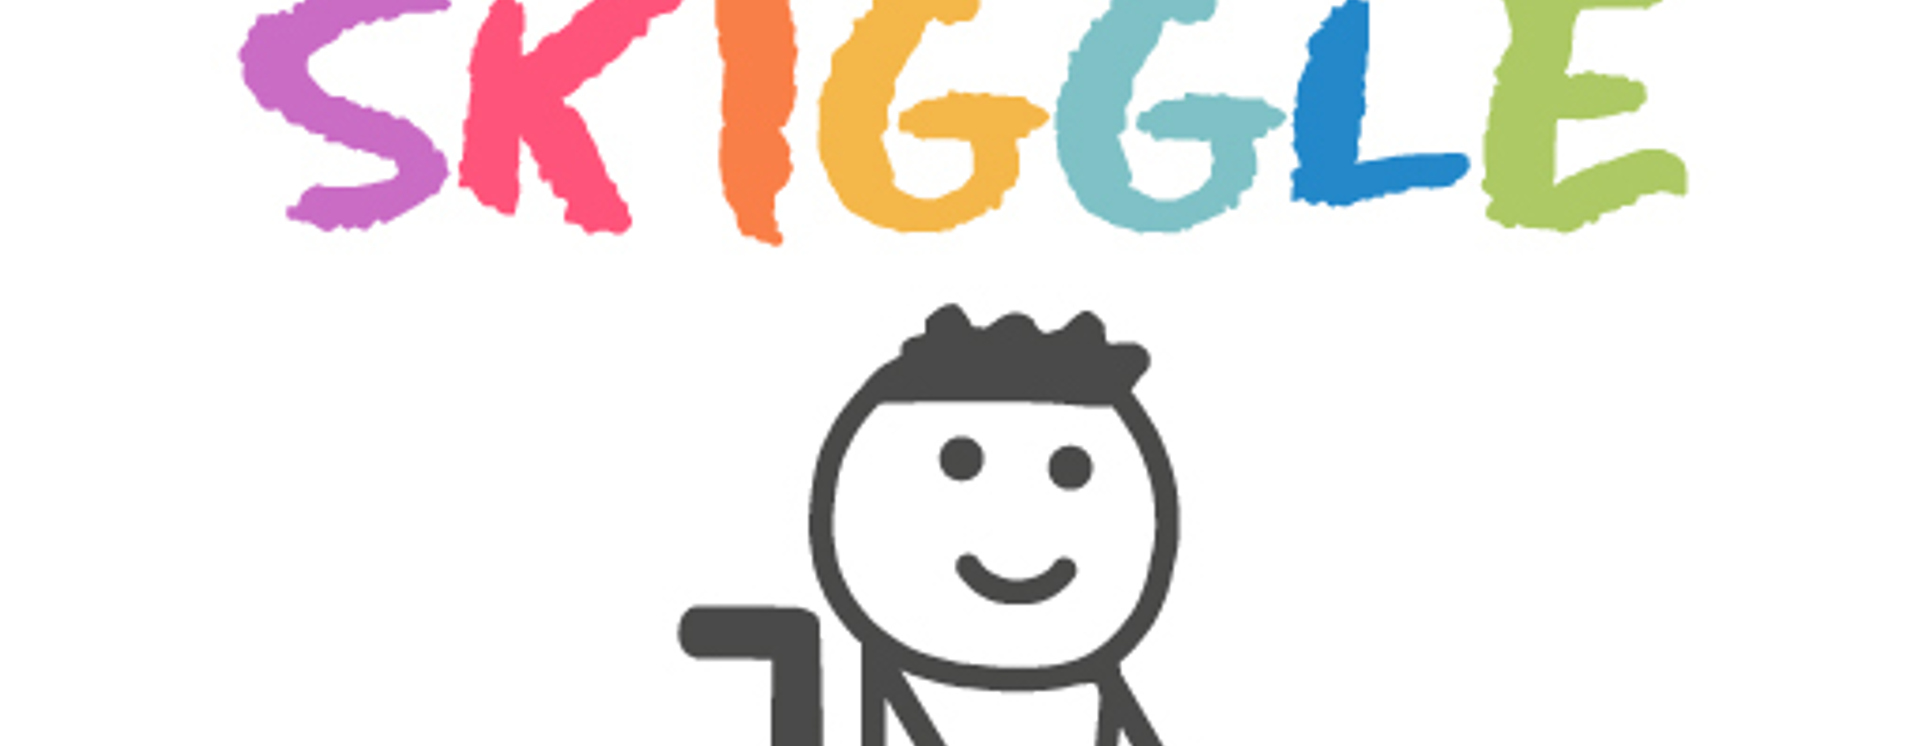 Skiggle.com